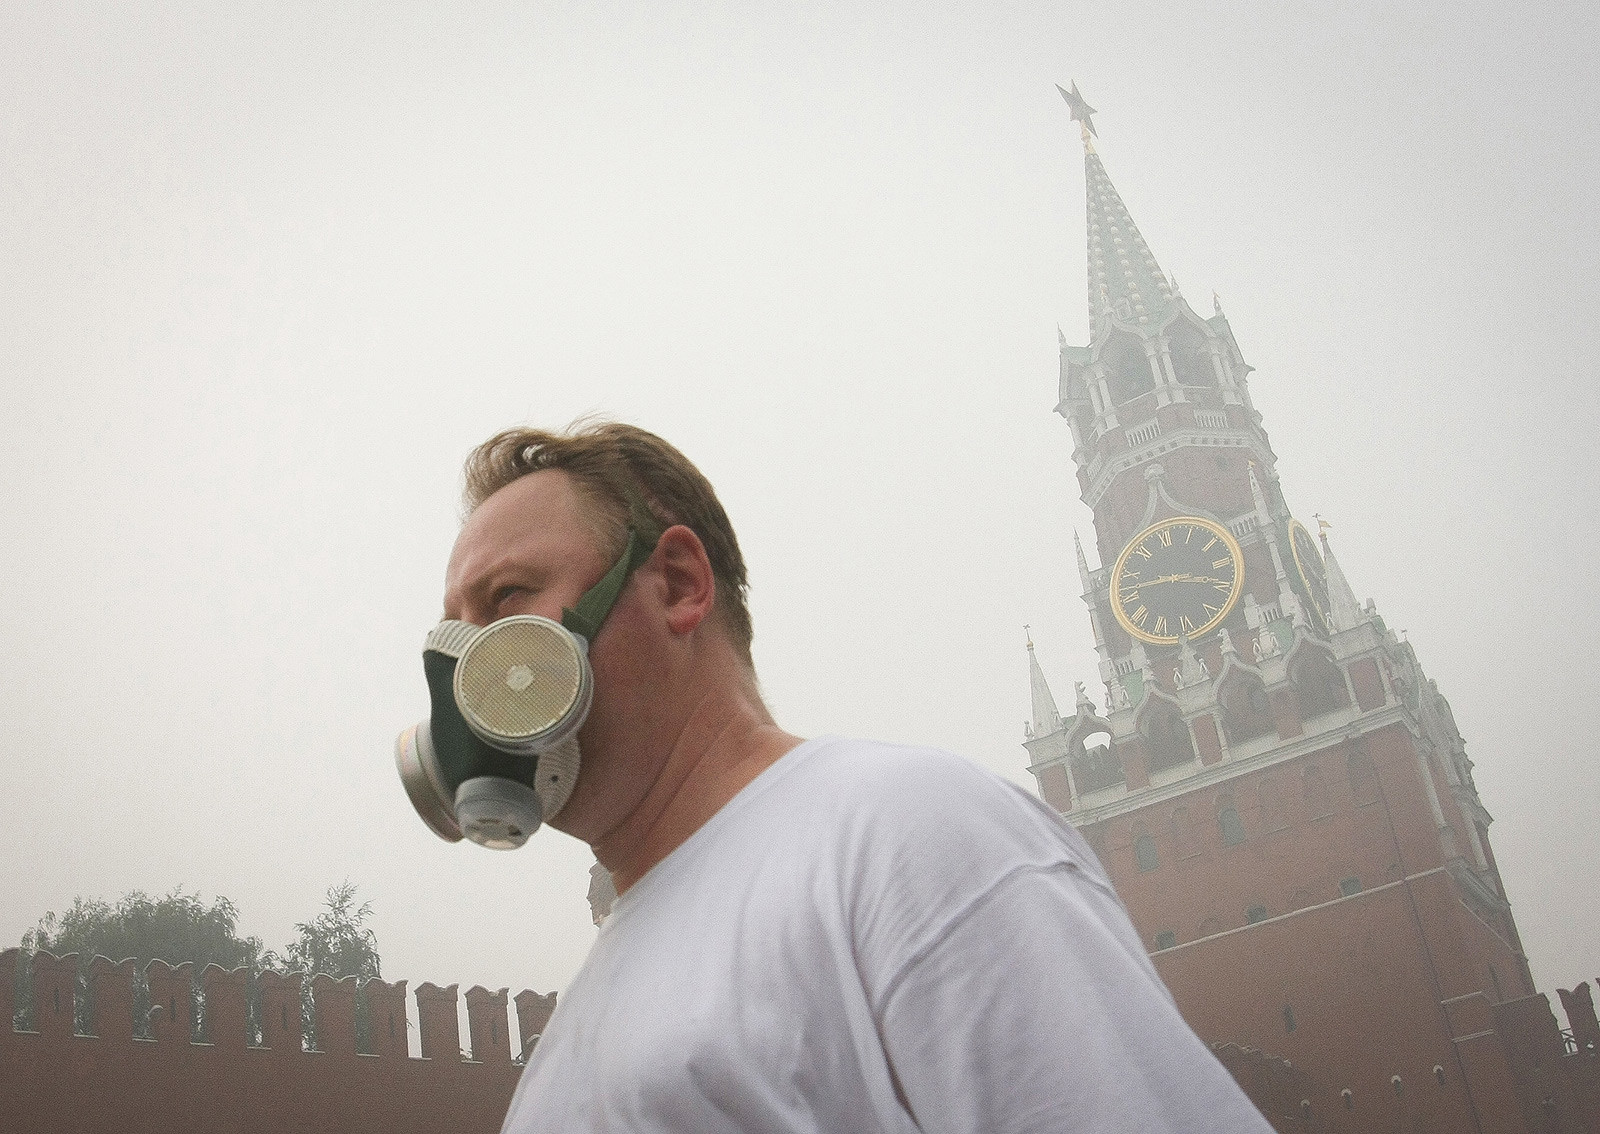 Foto tirada em 7 de agosto de 2010 mostra homem usando máscaras de gás para se proteger da poluição em Moscou devido aos incêndios florestais.